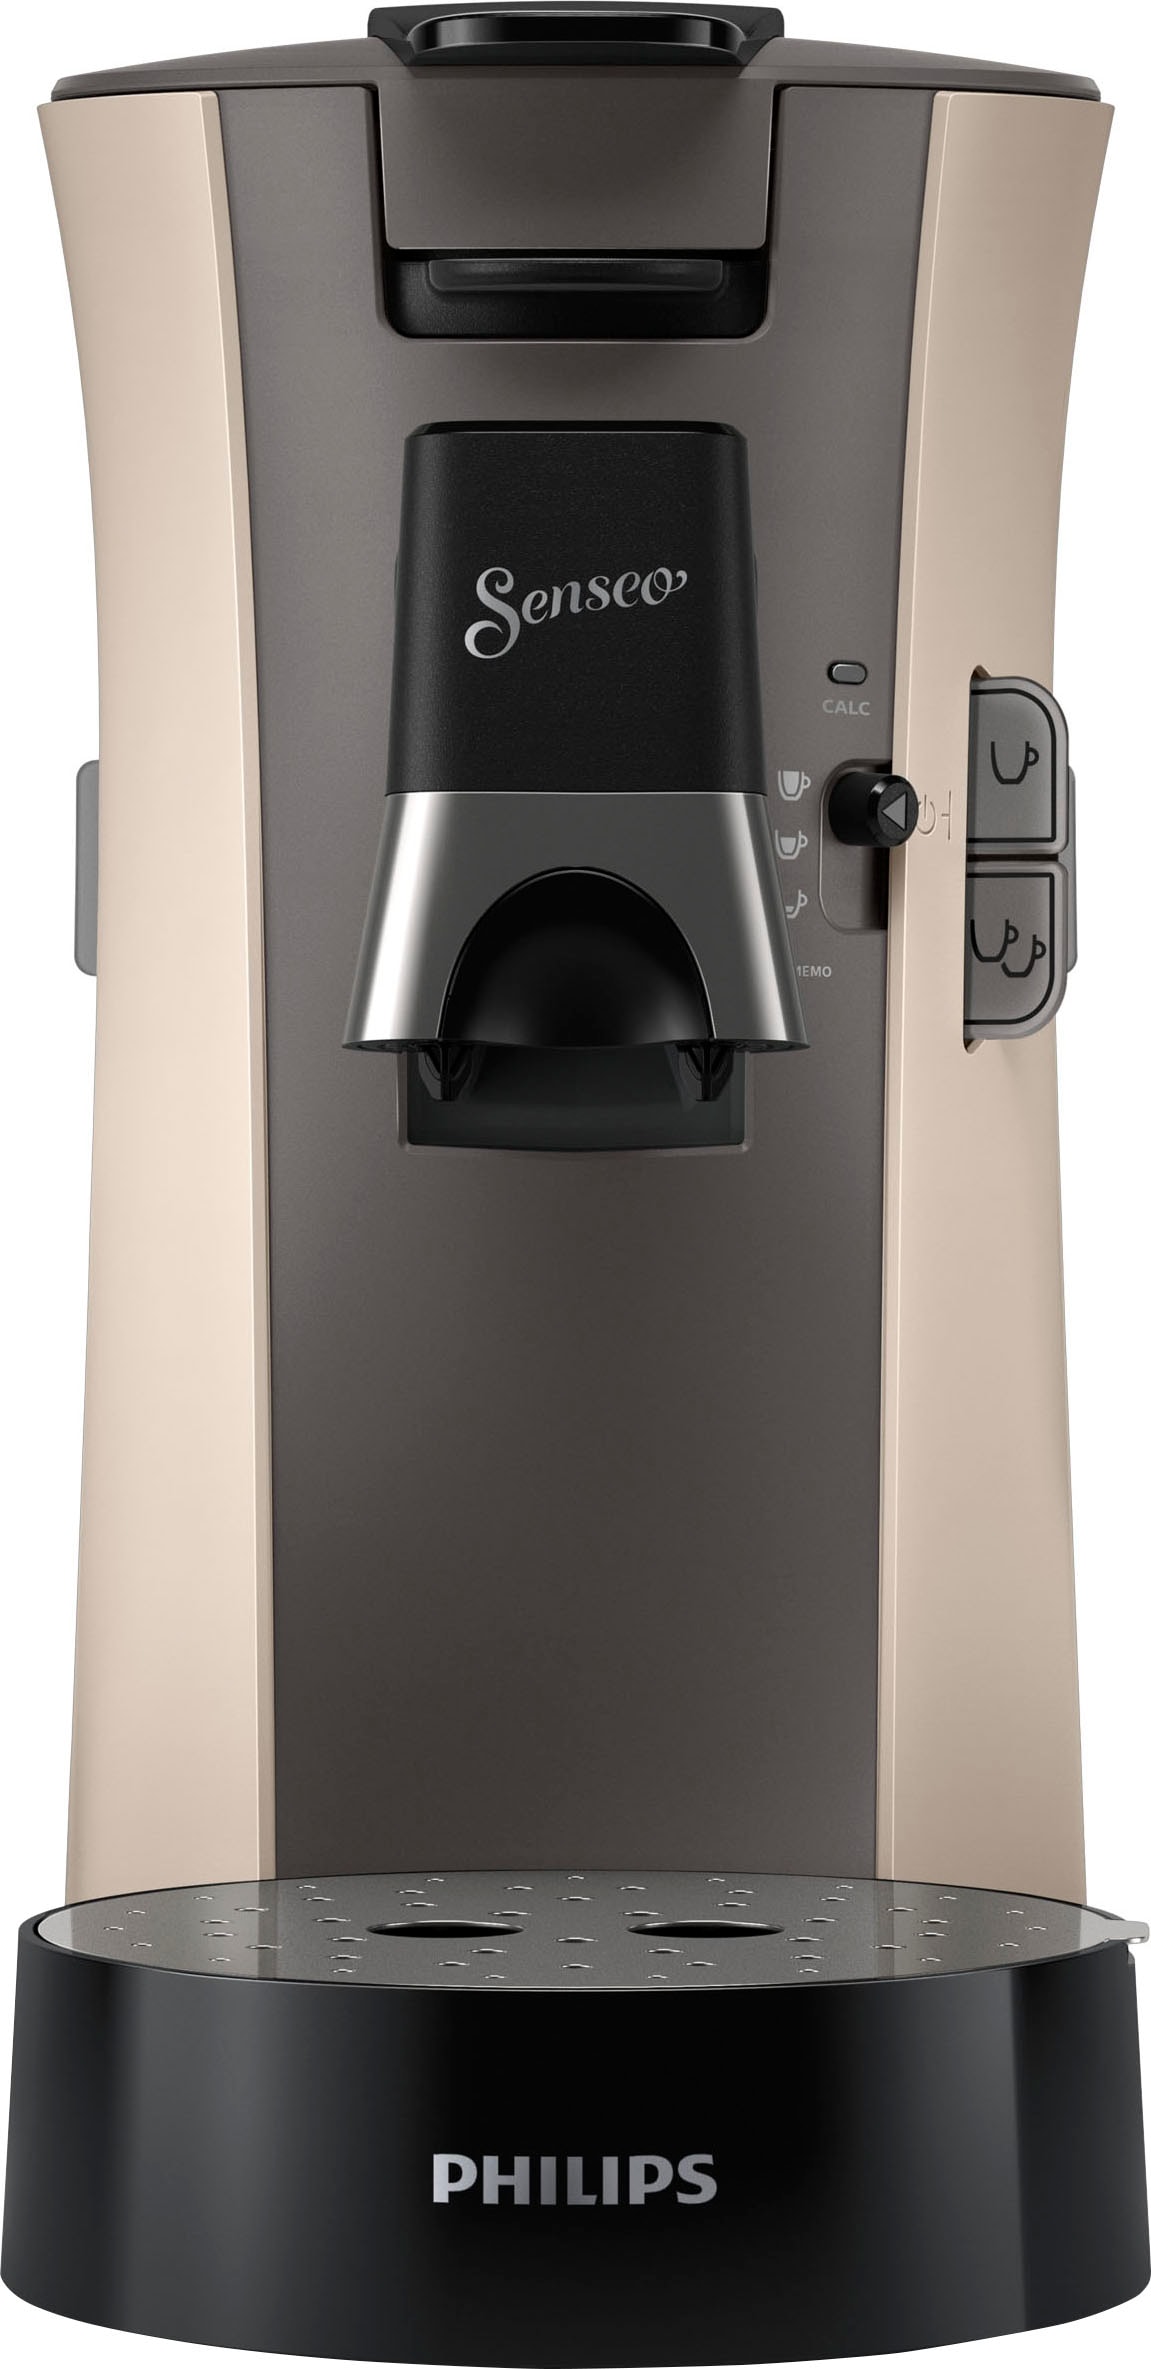 UVP »Select von +3 Memo-Funktion, im € Philips CSA240/30, 14,- 21% inkl. Senseo recyceltem Wert Gratis-Zugaben bestellen online Kaffeespezialitäten«, Kaffeepadmaschine aus Plastik,